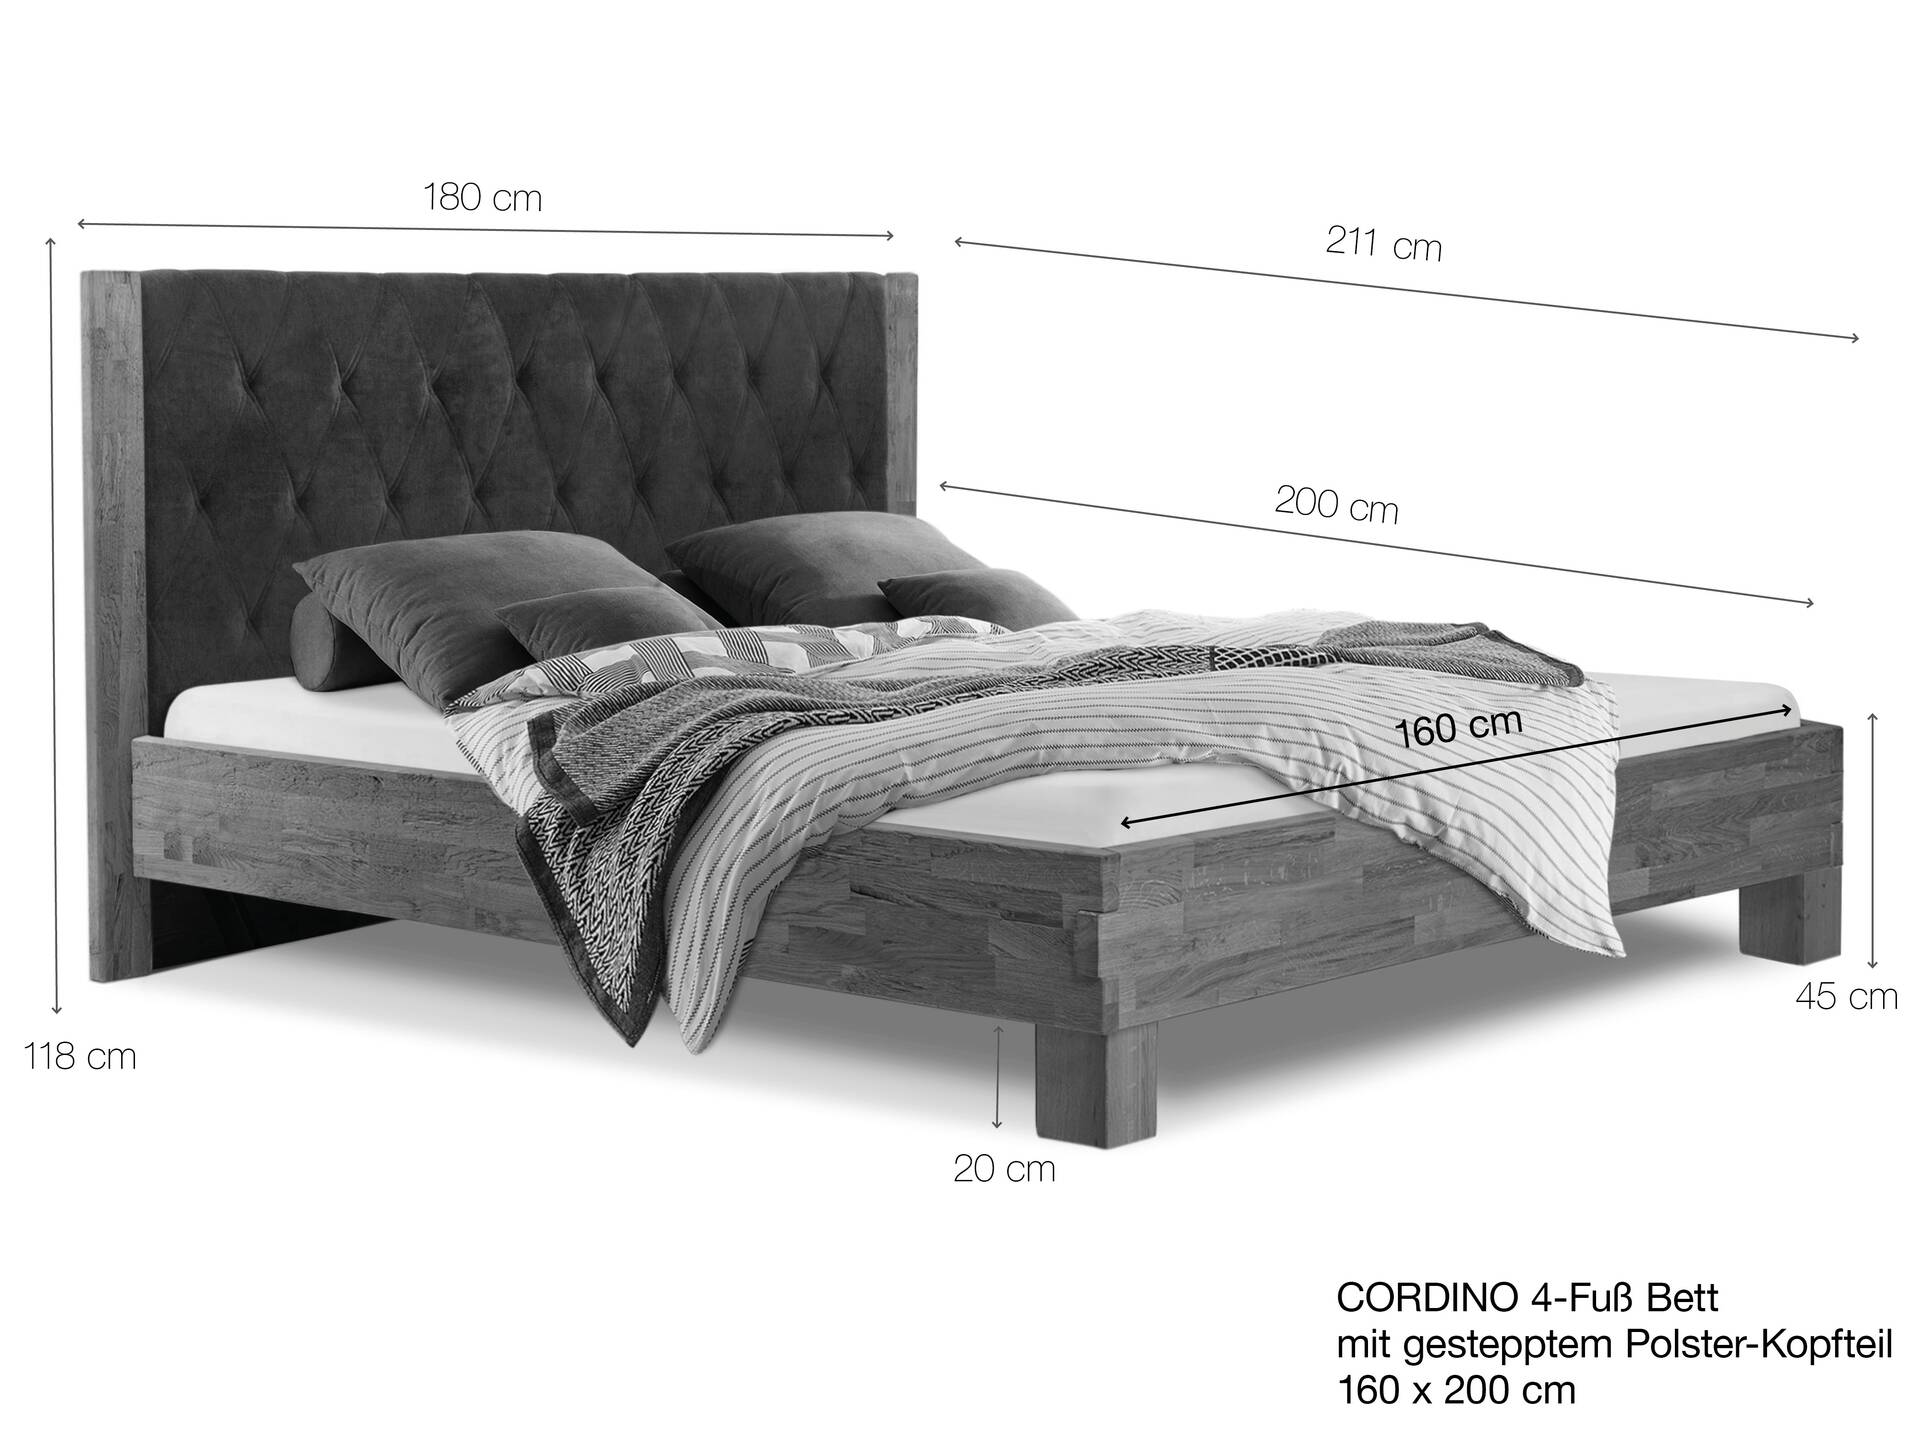 CORDINO 4-Fuß-Bett aus Eiche mit gestepptem Polster-Kopfteil, Material Massivholz 160 x 200 cm | Eiche lackiert | Stoff Anthrazit | gebürstet